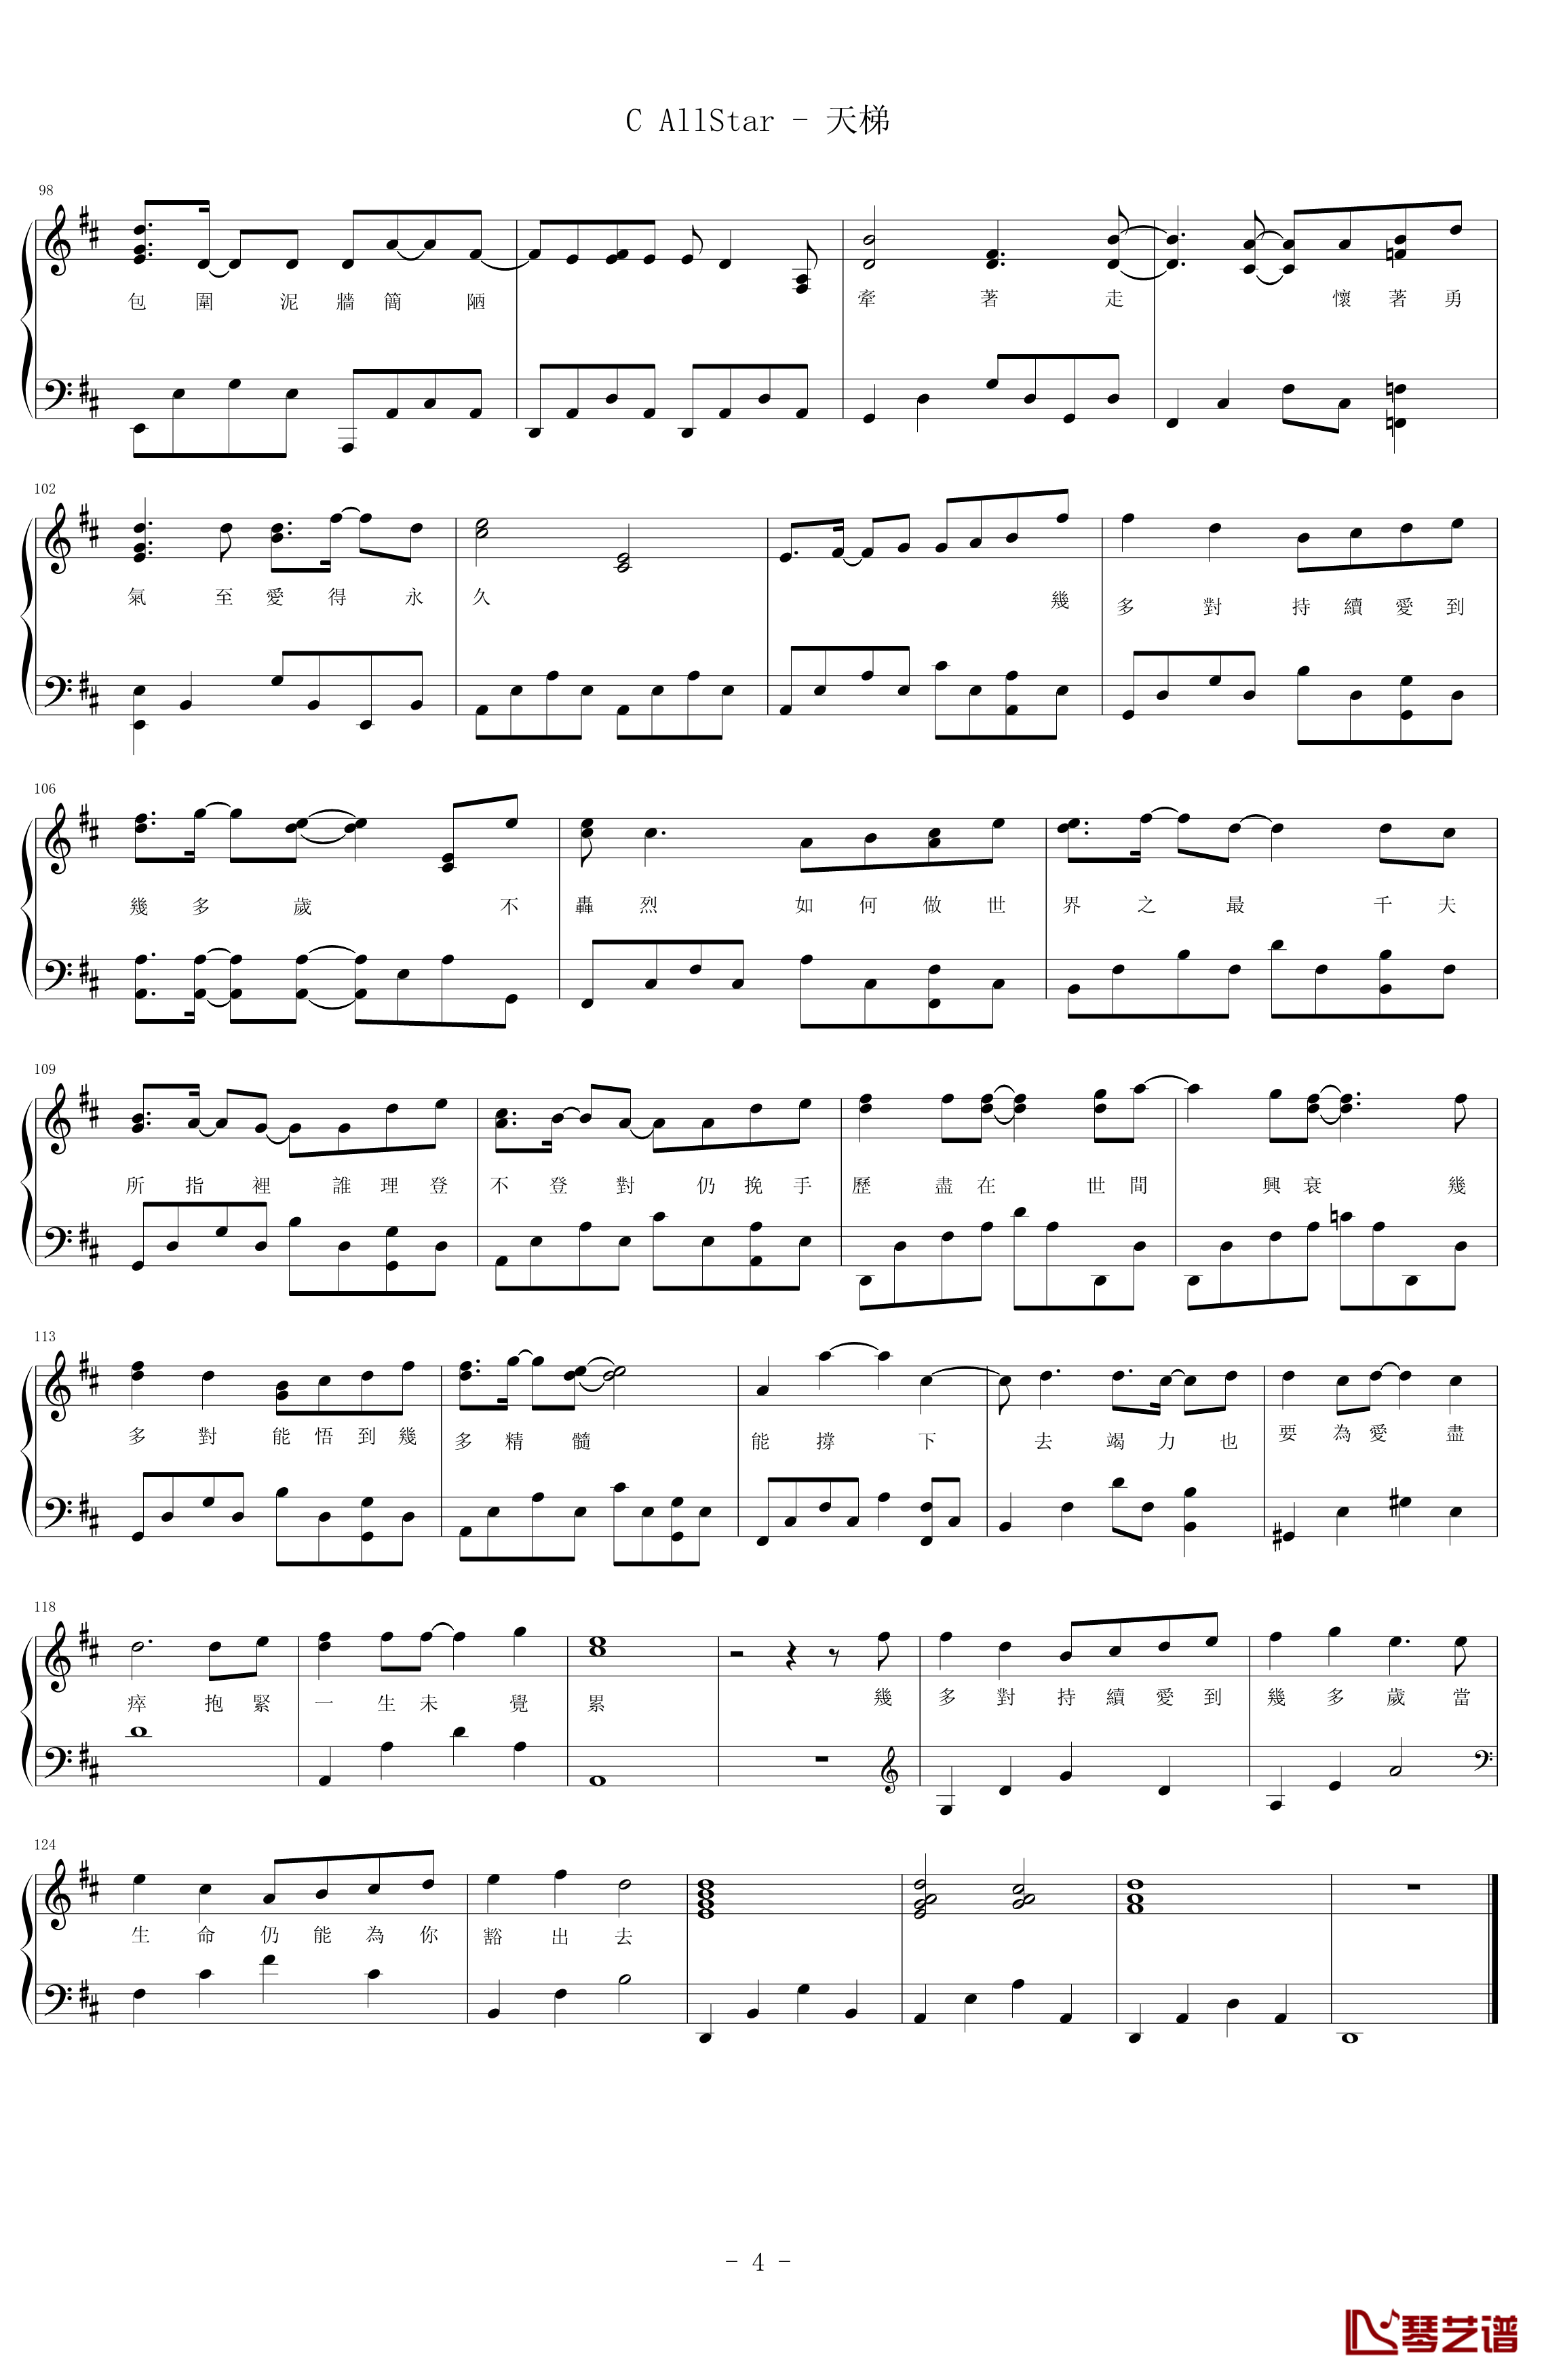 天梯钢琴谱-简易版-C AllStar4